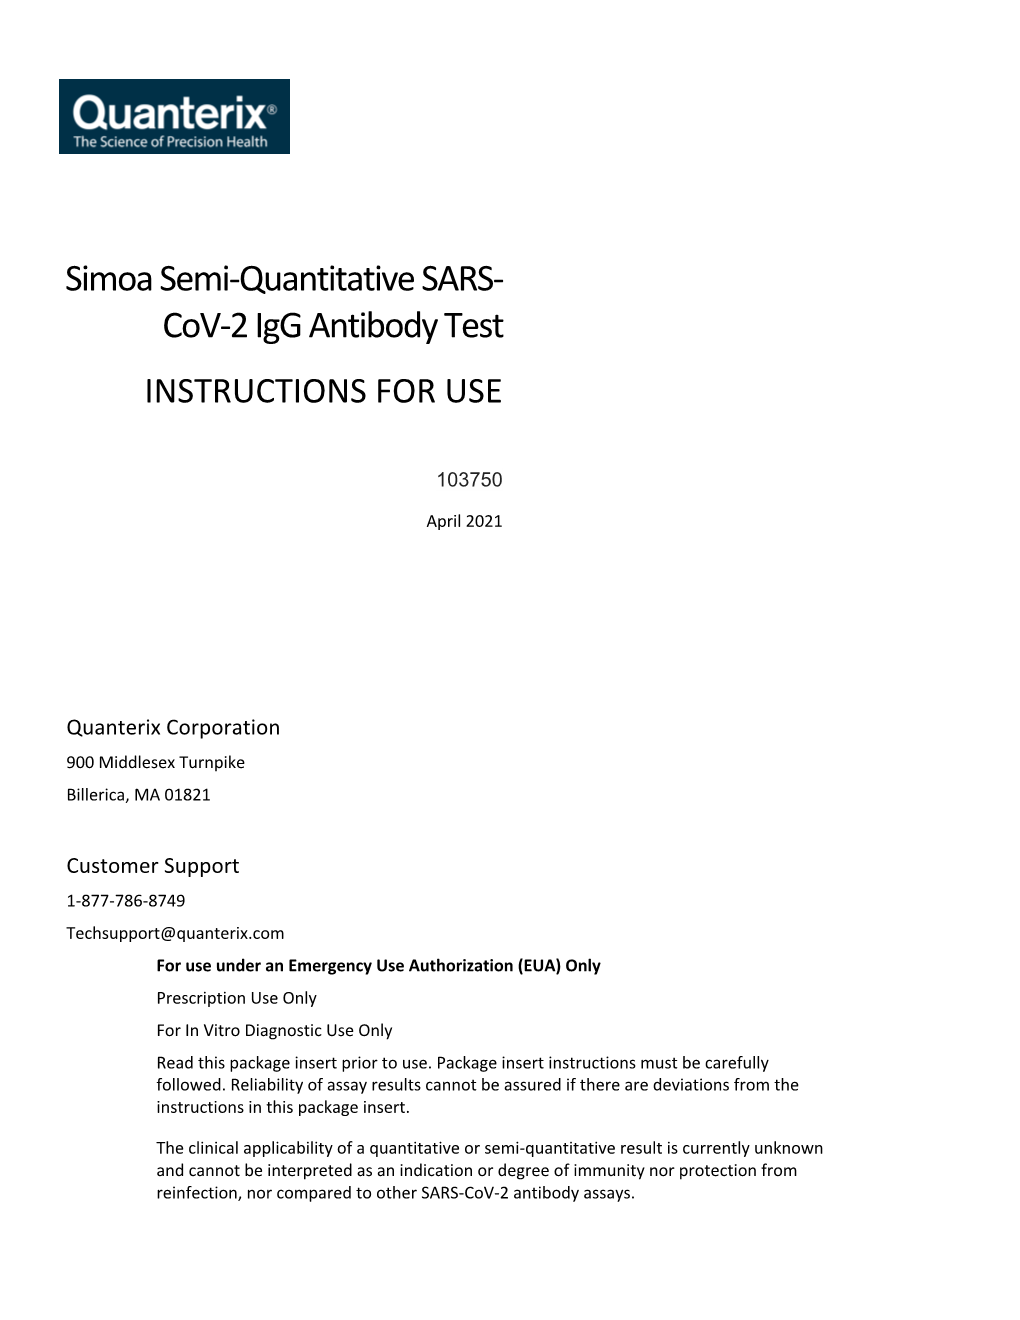 Simoa Semi-Quantitative SARS-Cov-2 Igg Antibody Test Is an Automated Igg